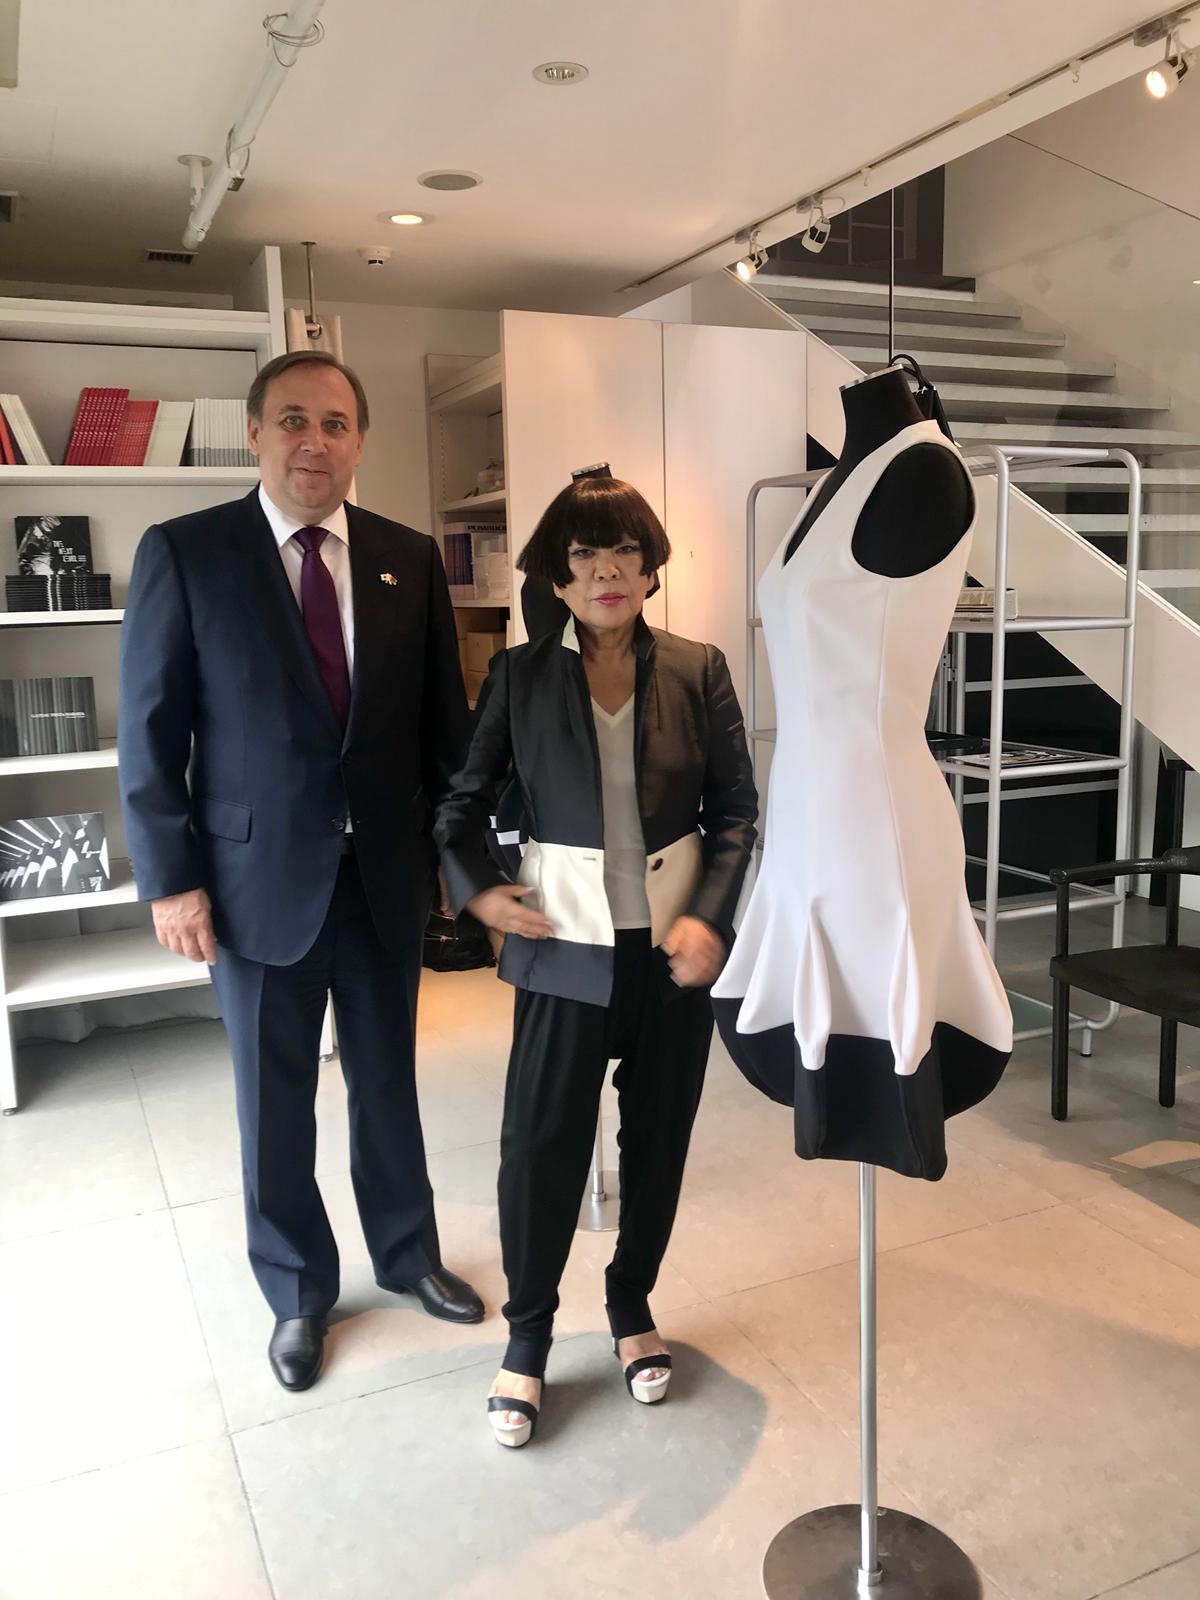 ルスラン イエシン大使は 日本の有名なファッションデザイナー コシノジュンコ氏と面談しました 駐日ベラルーシ共和国大使館